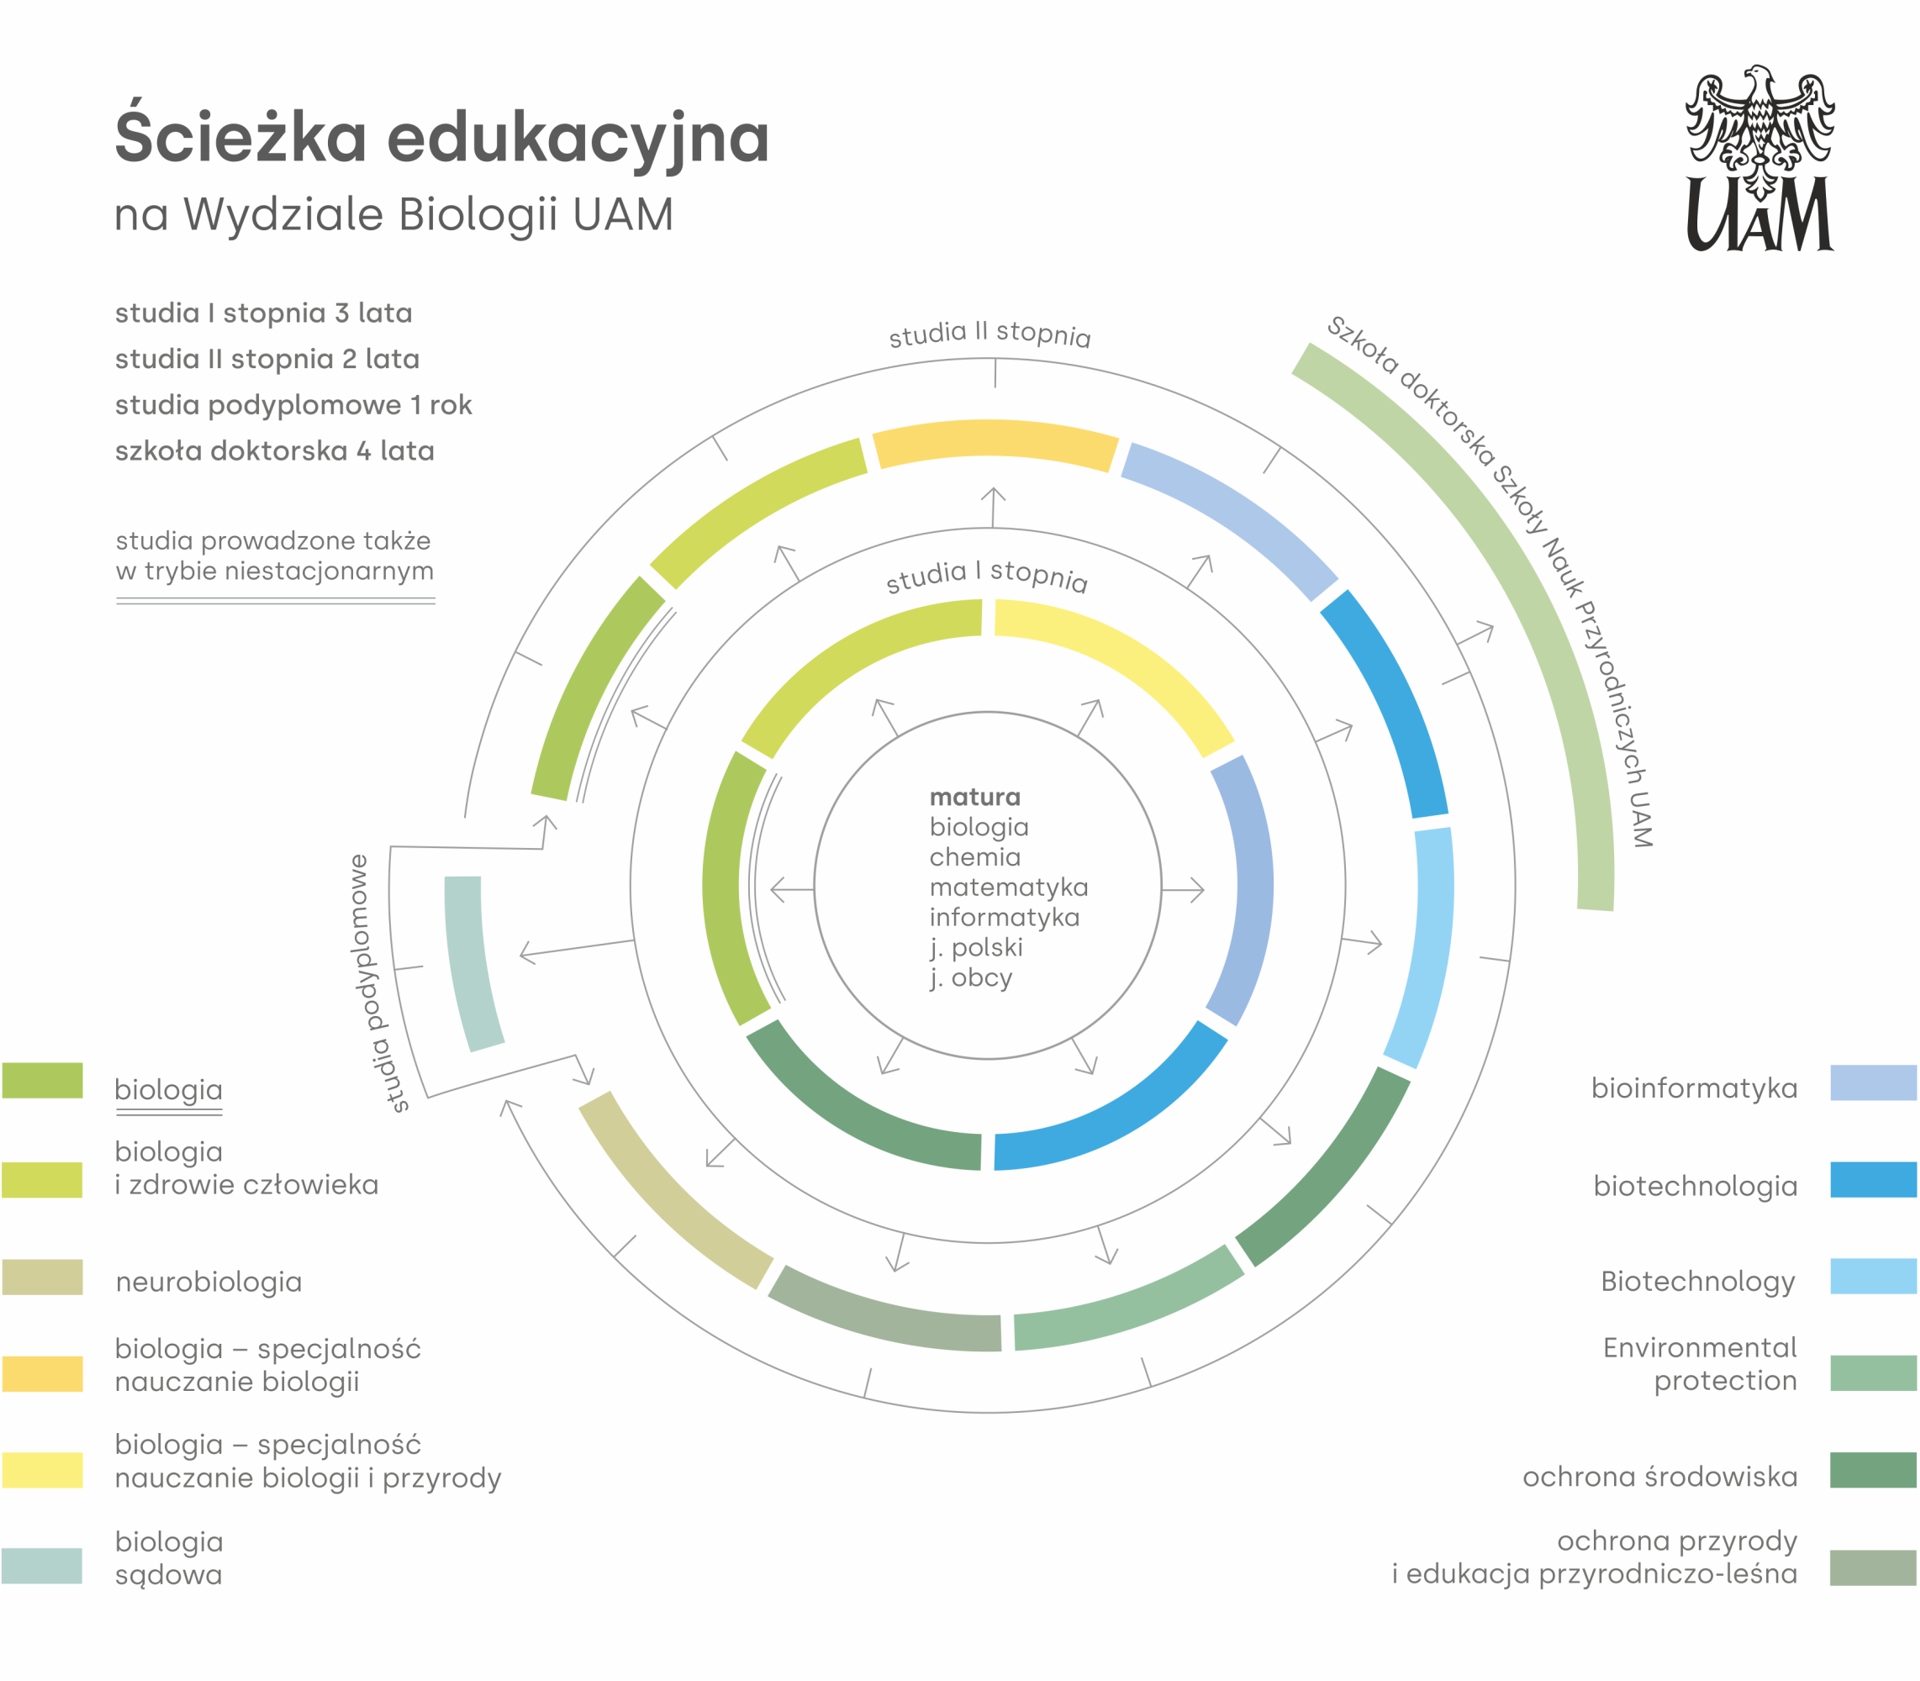 Wykres kołowy informujący o ścieżce edukacyjnej na Wydziale Biologii UAM.